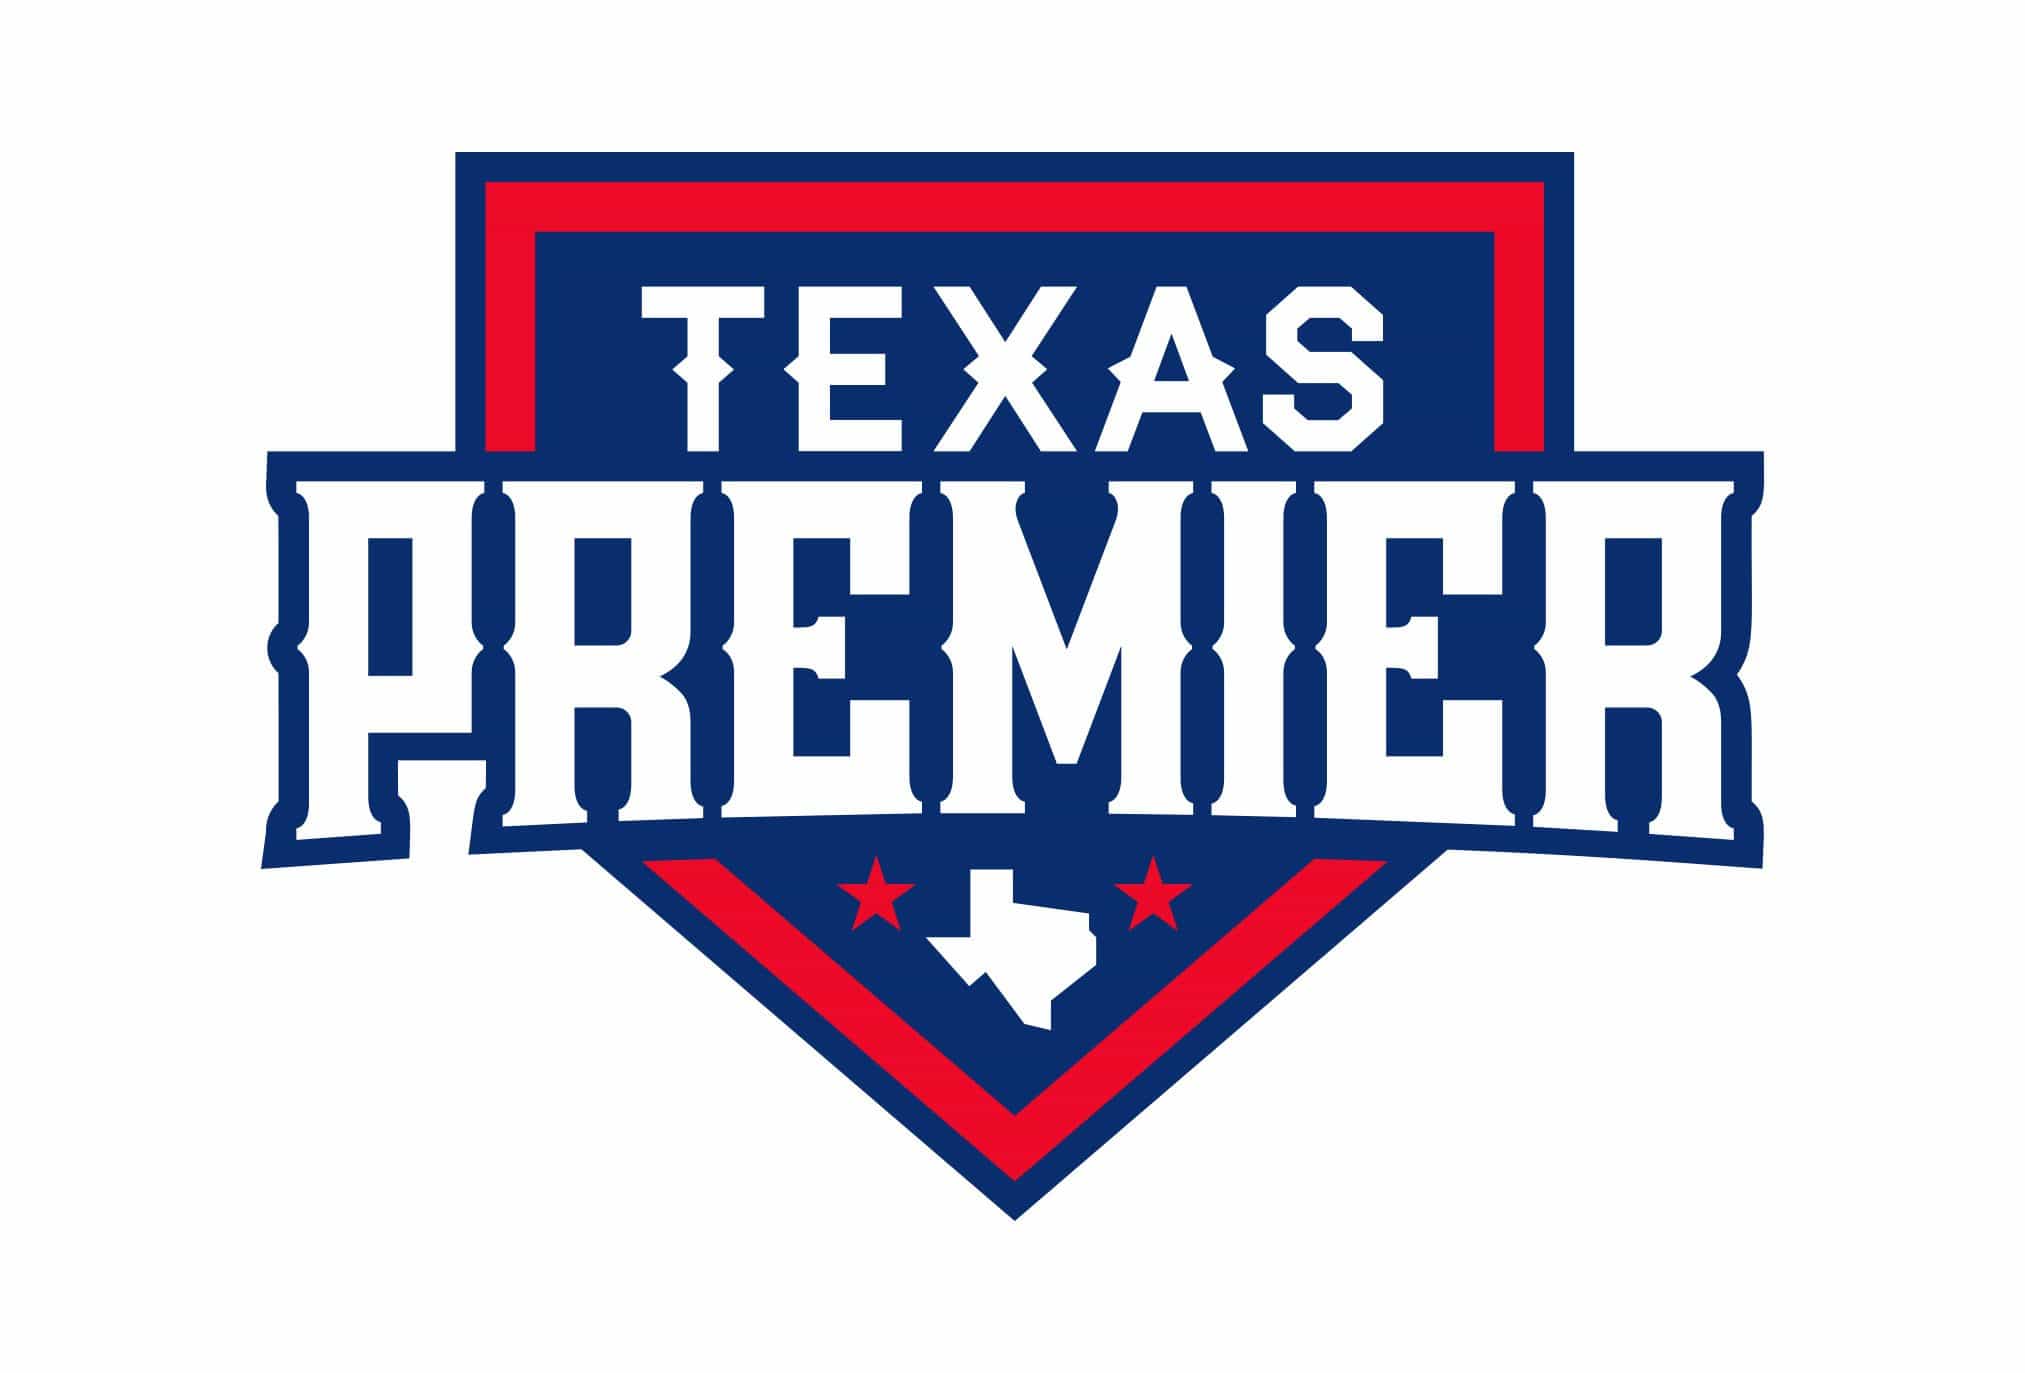 texas premier baseball logo design by left hand design in austin texas